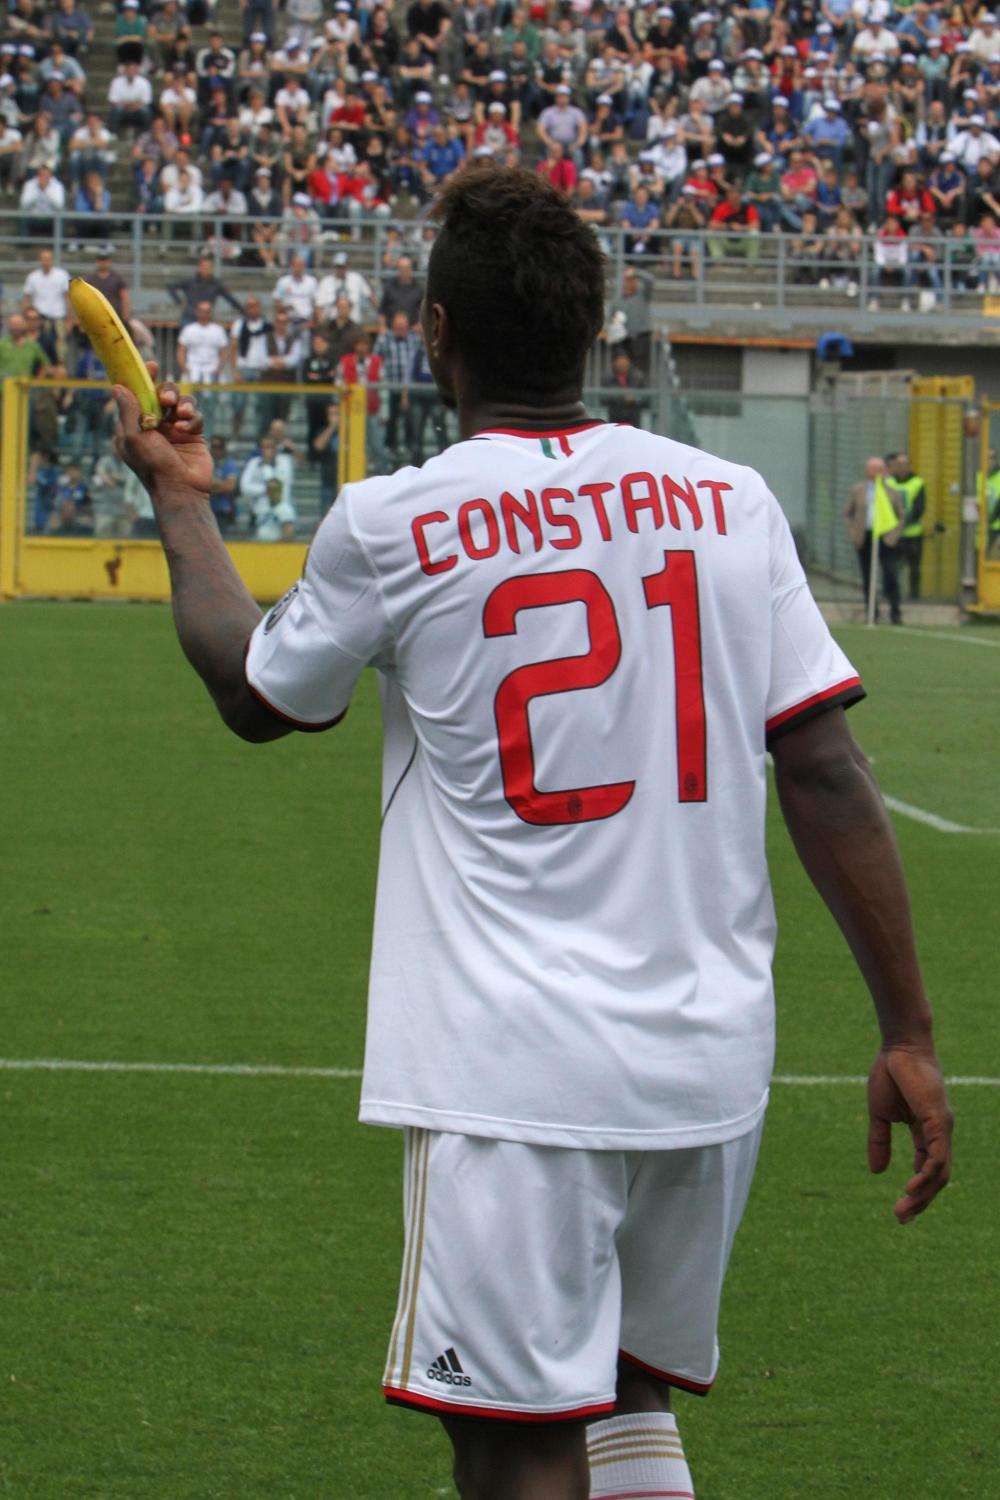 Calcio:Atalanta-Milan, da spalti banana a Constant